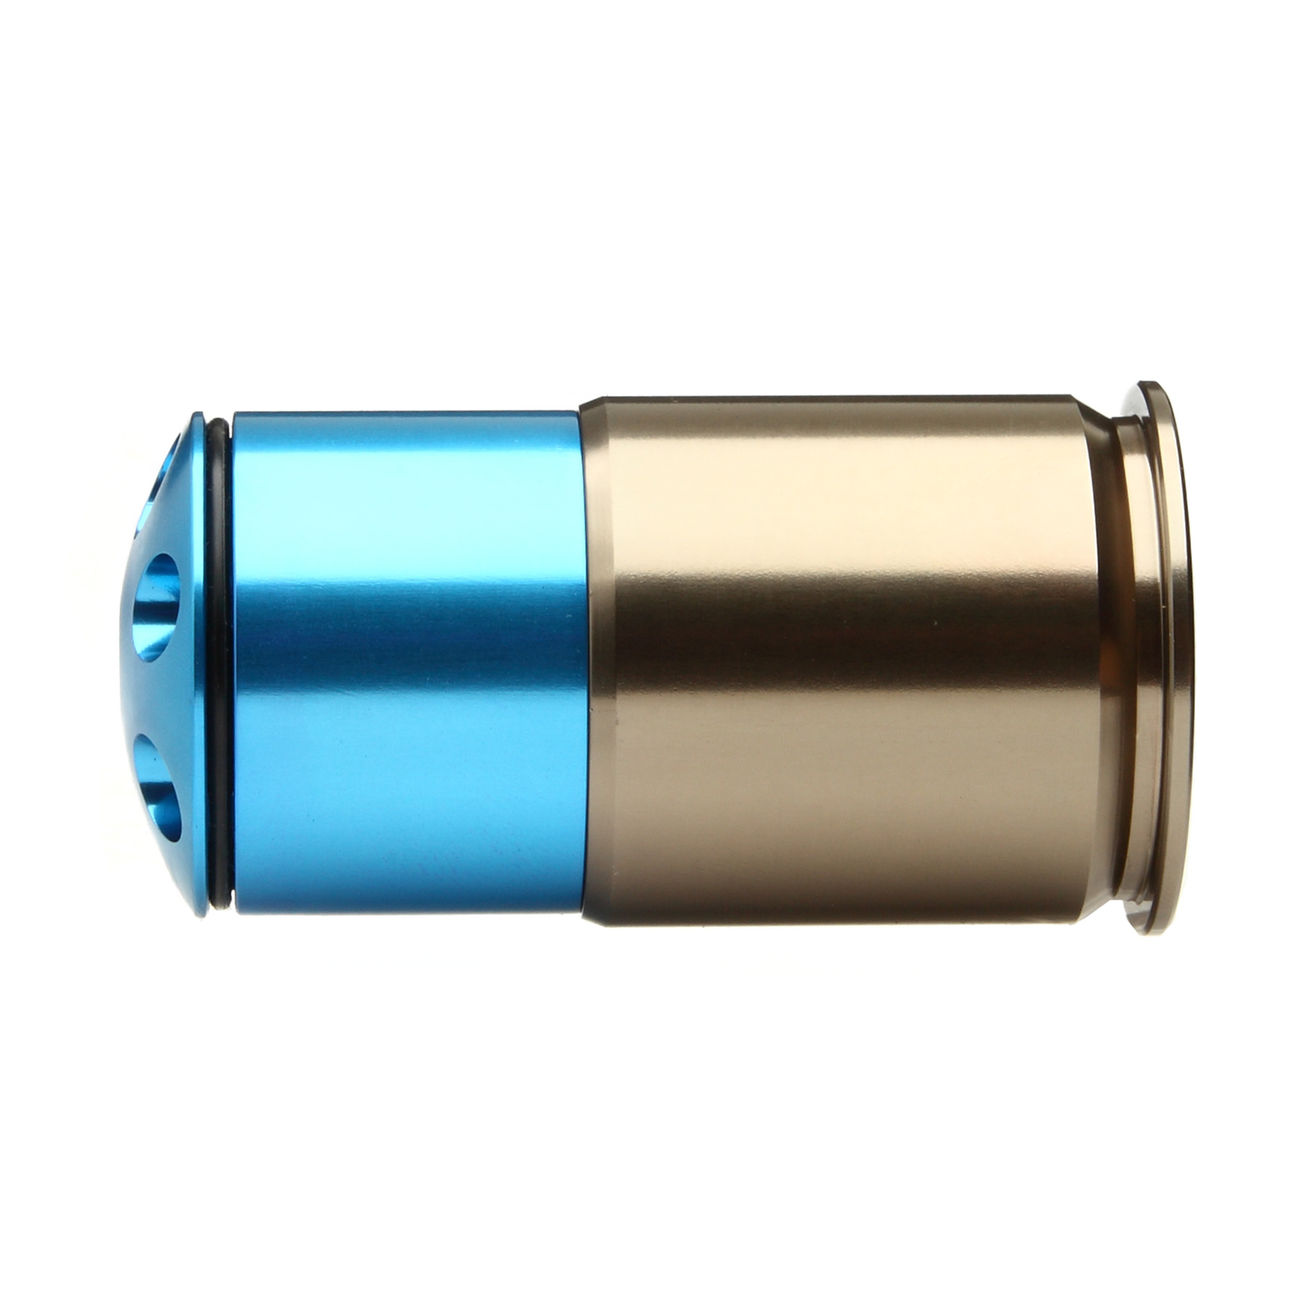 MadBull XM781HP 40mm Vollmetall Hülse / Einlegepatrone f. 36 8mm BBs blau Bild 1